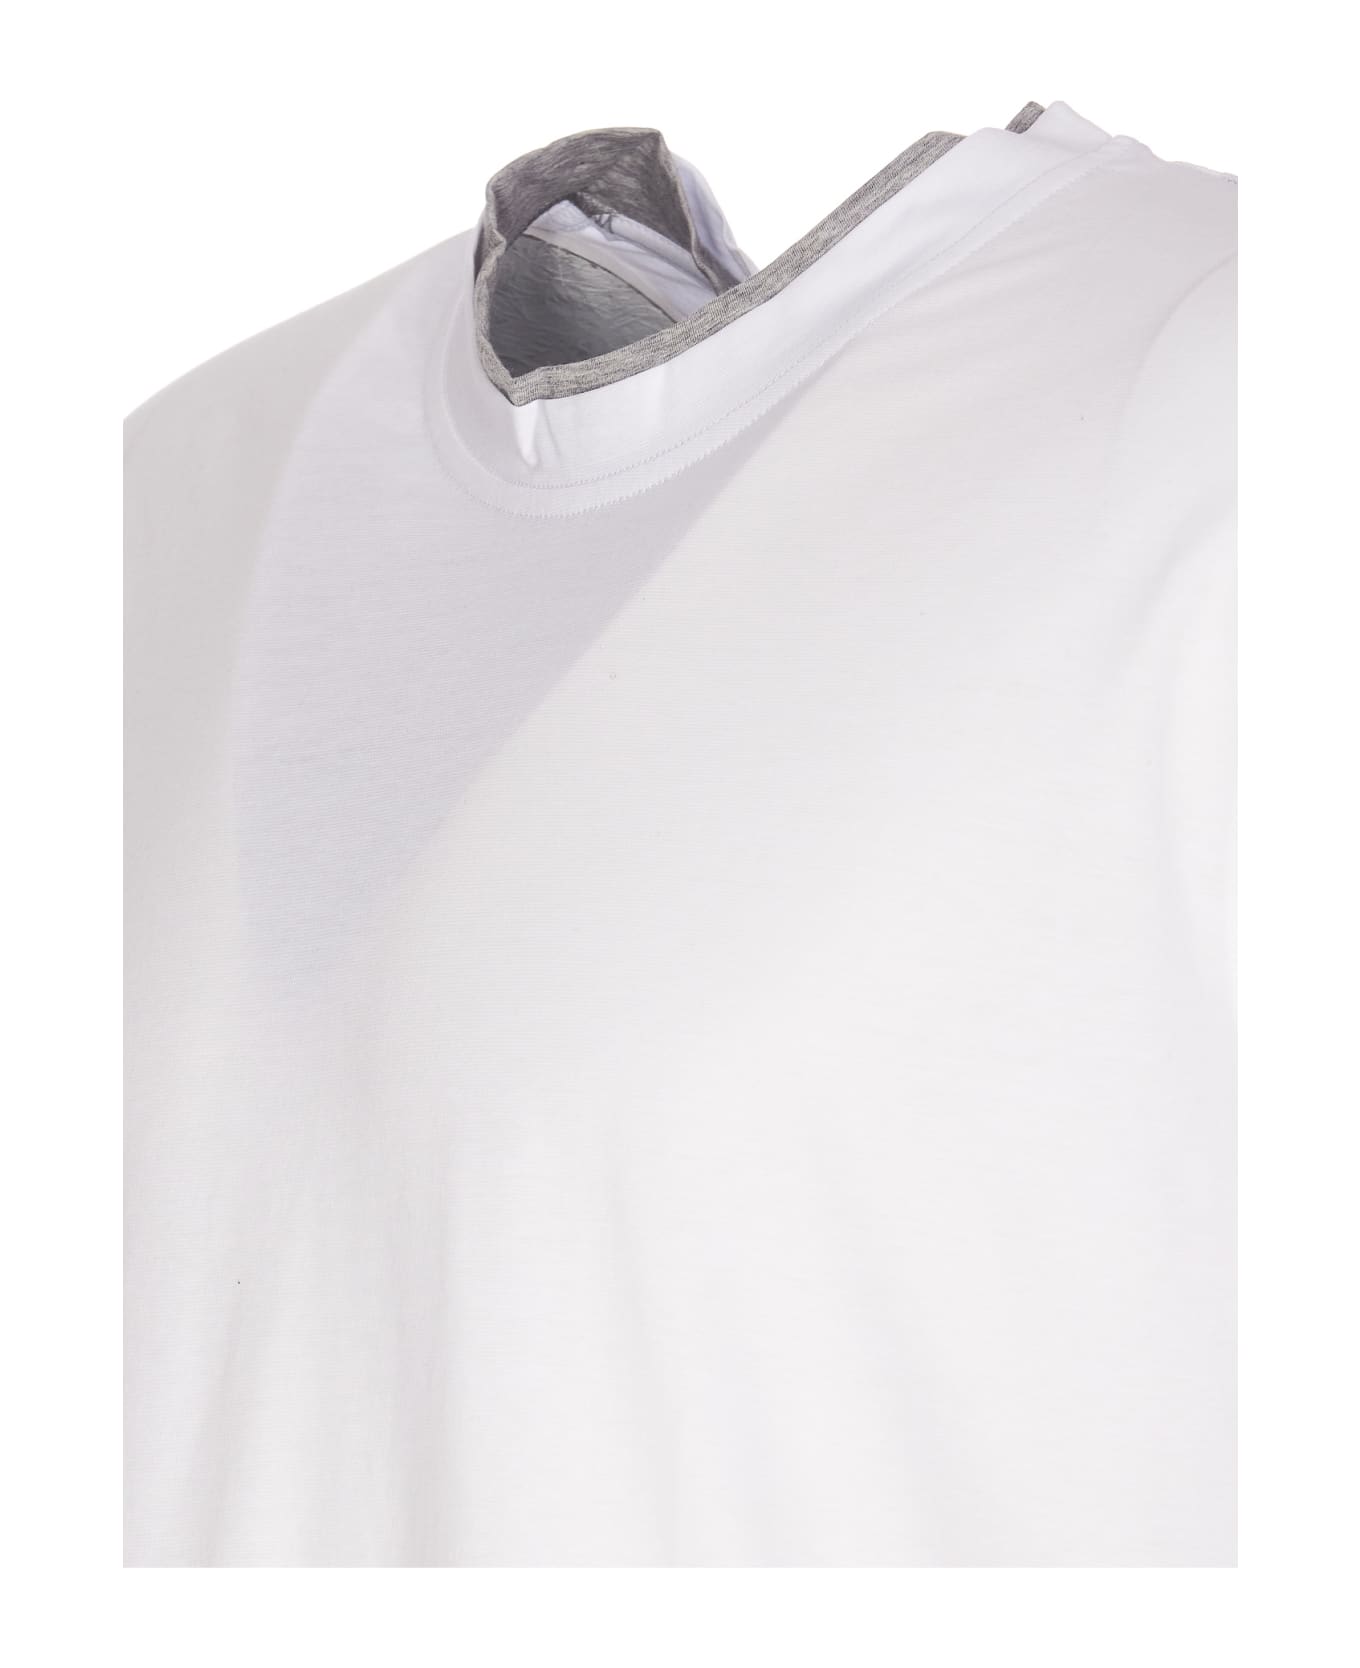 Paolo Pecora T-shirt - Bianco シャツ